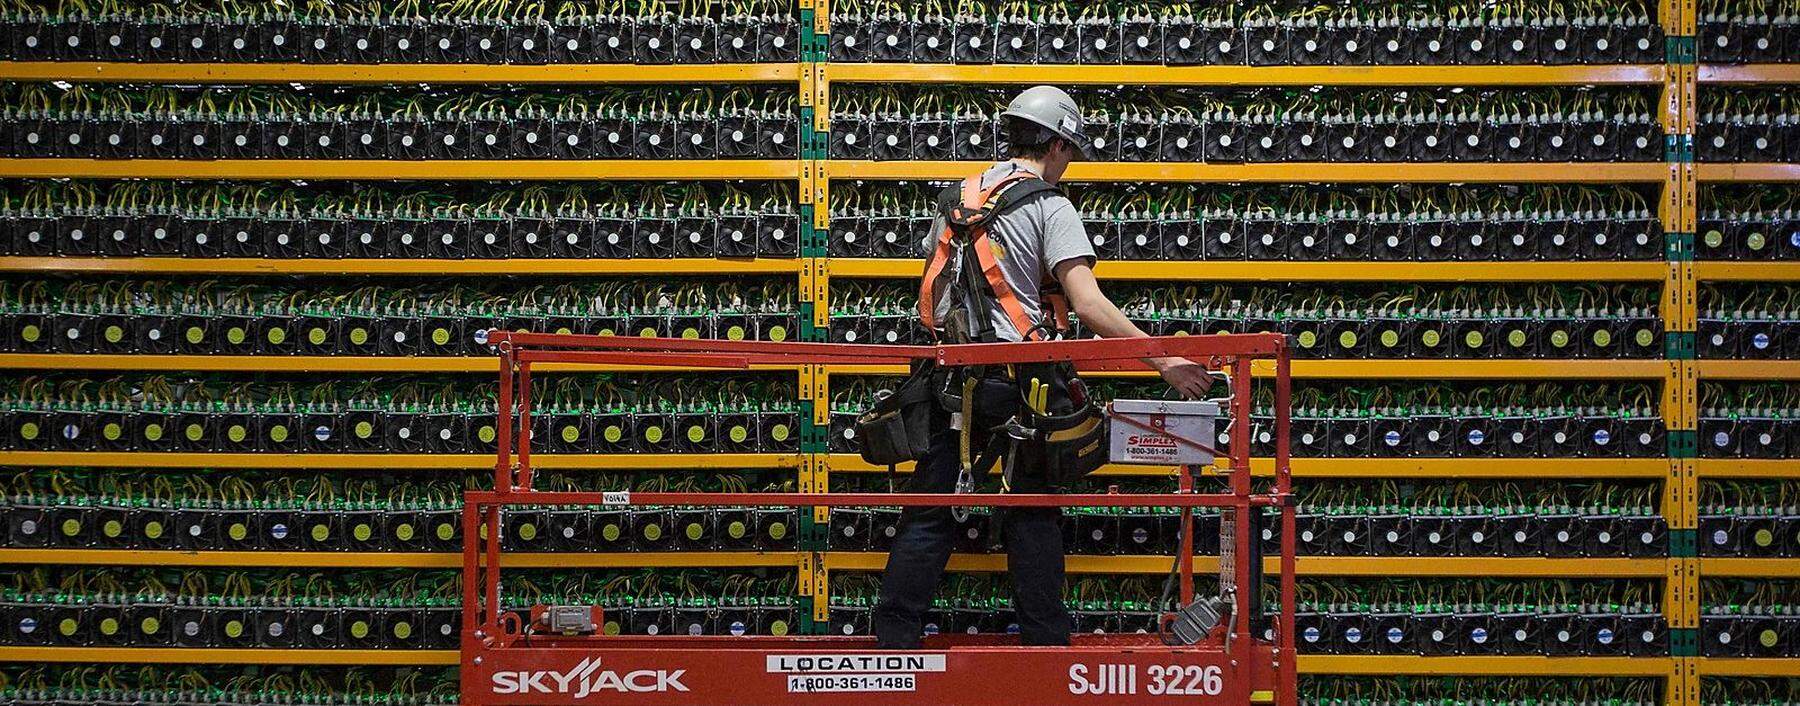 Bitcoin-Mining benötigt viel Strom.